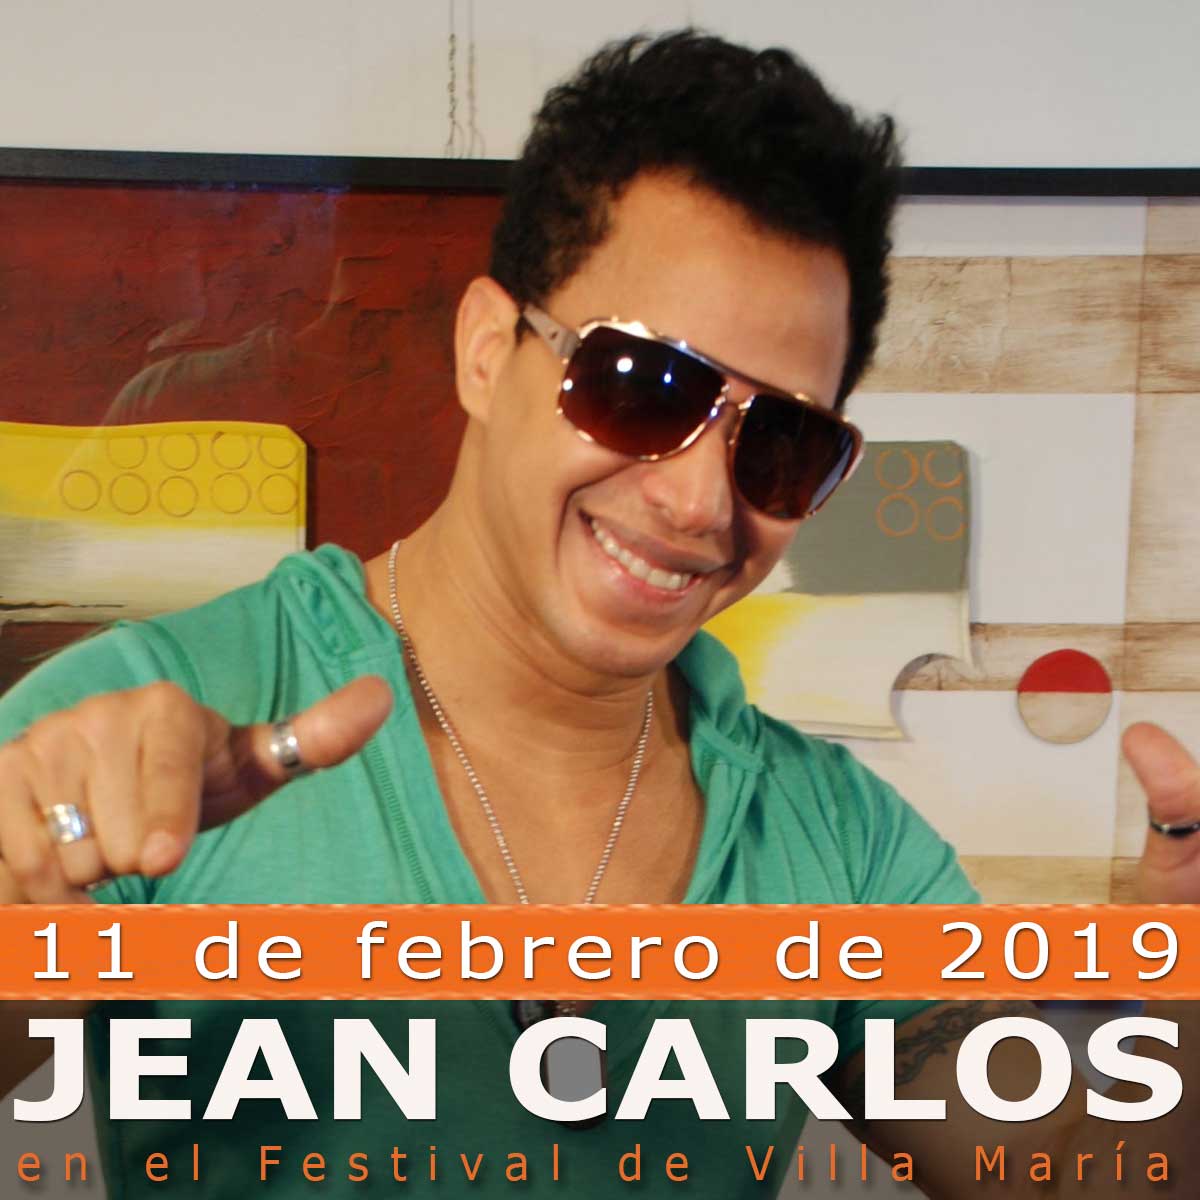 Jean Carlos en el Festival Villa María 2019